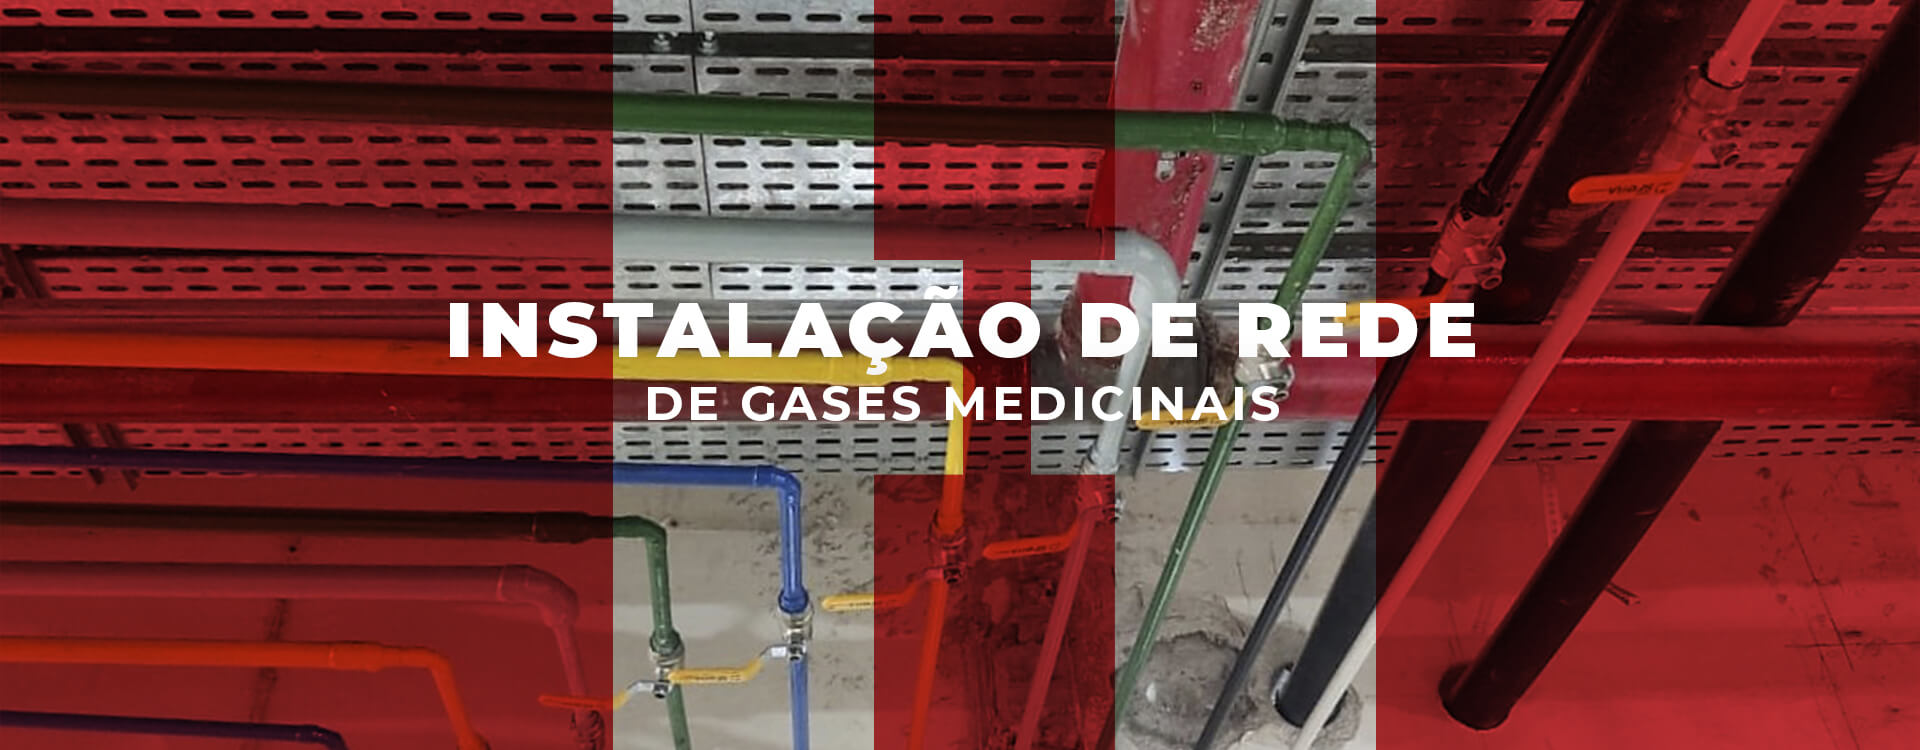 Instalação de redes de gases medicinais